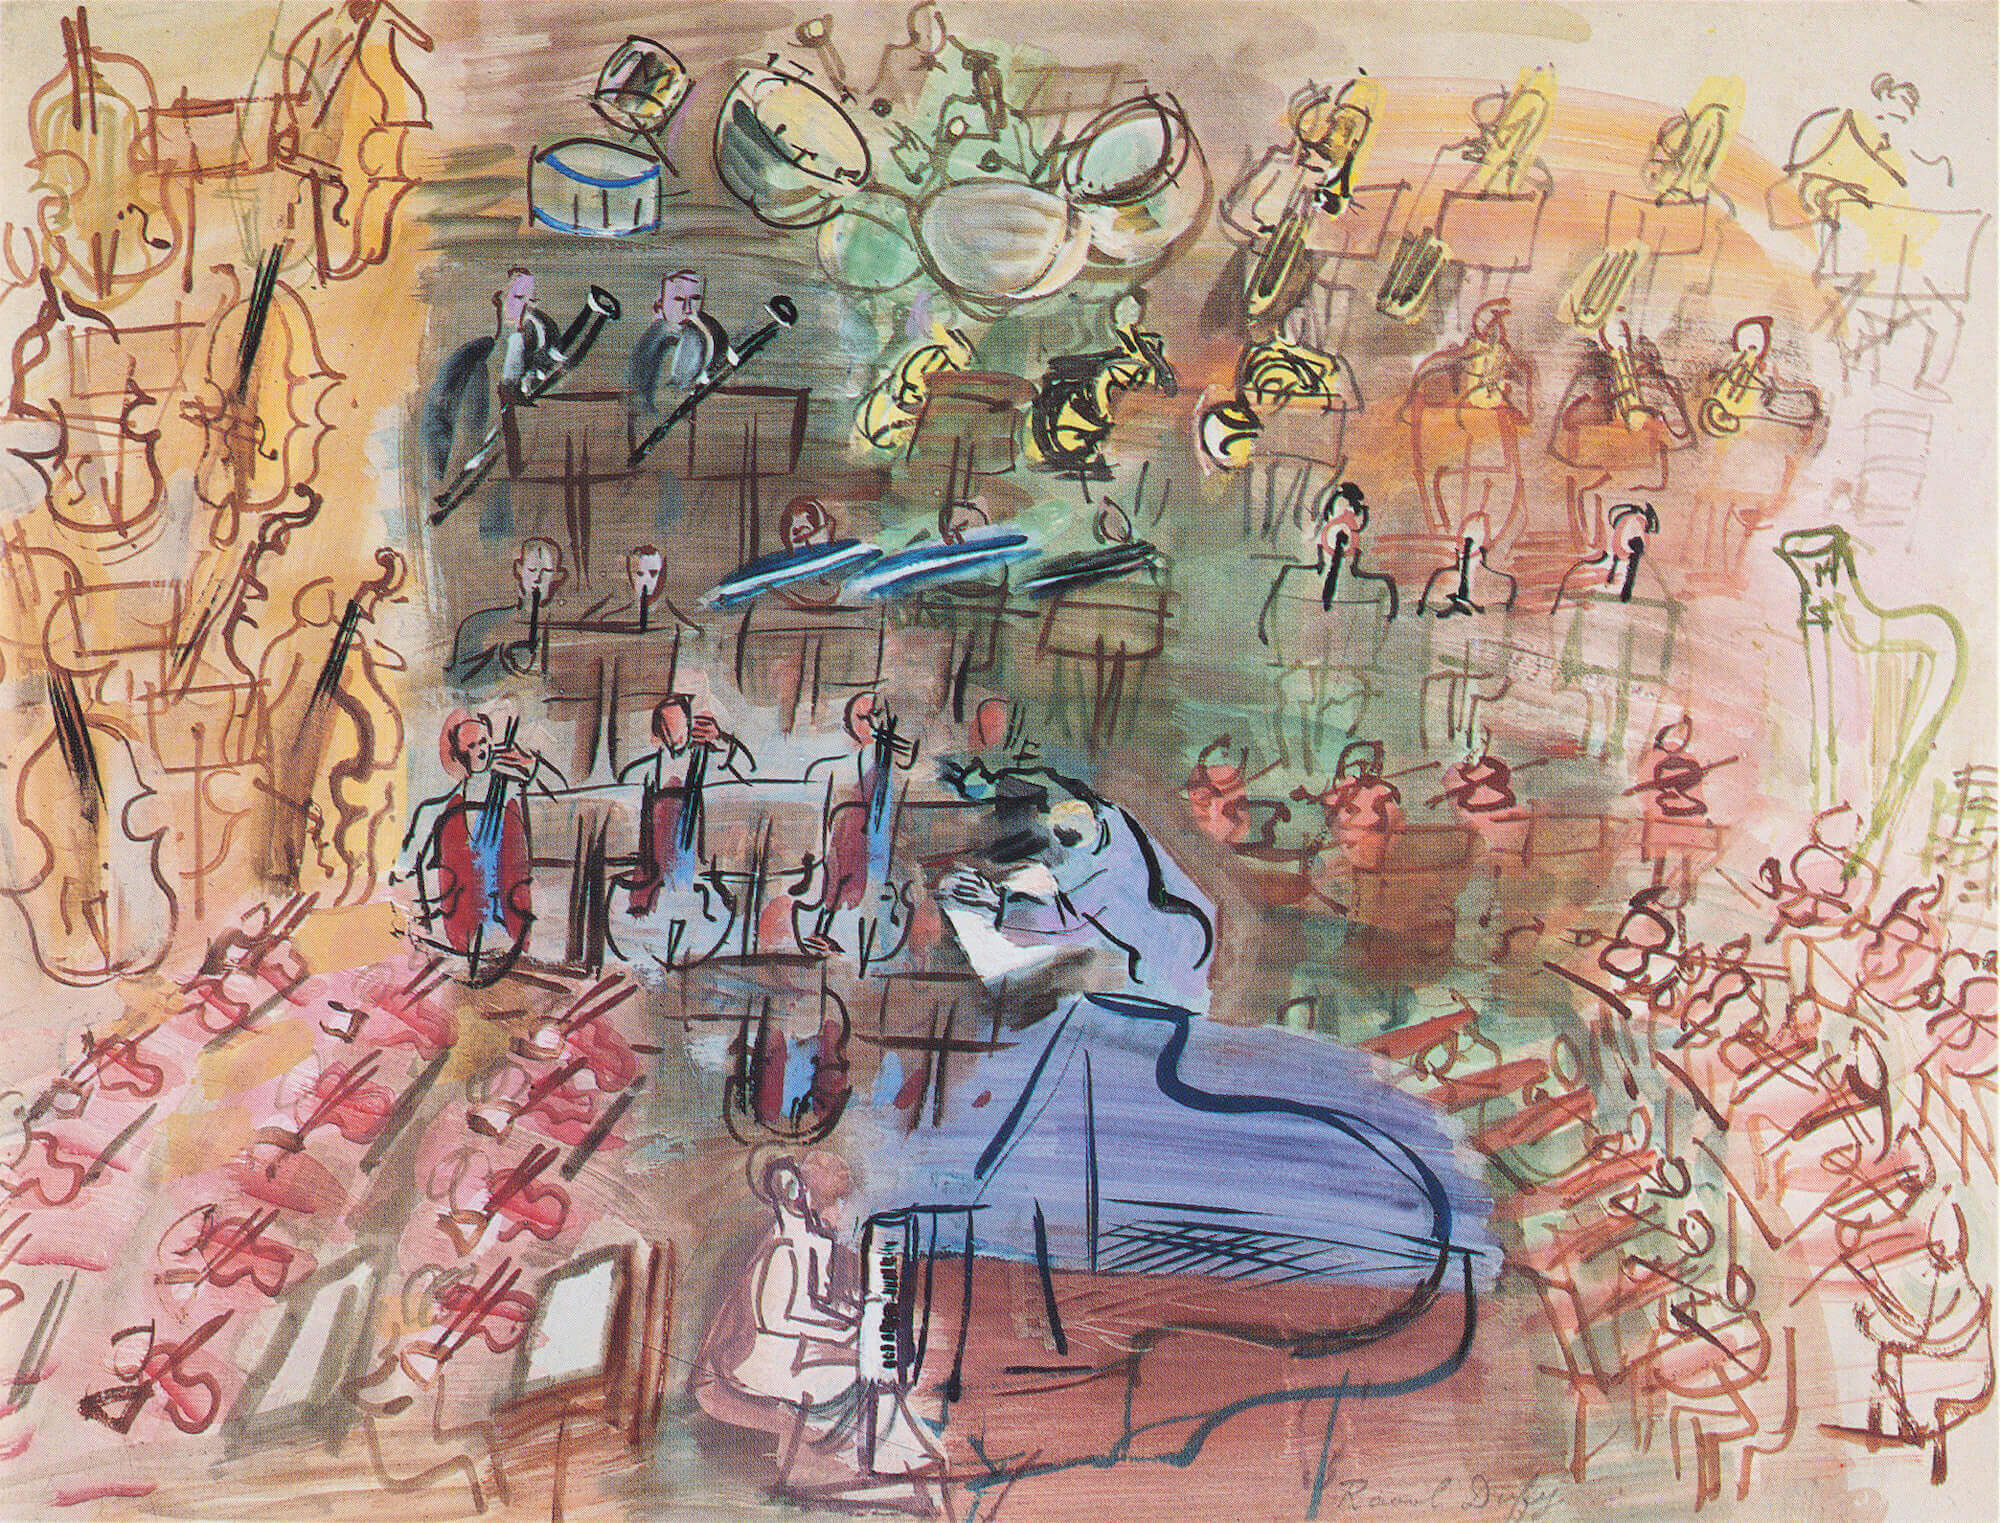 Raoul Dufy, Orchestre à la pianiste, c. 1941, watercolor and gouache, 50 x 65 cm, 19 ⅝ x 25 ½ inches